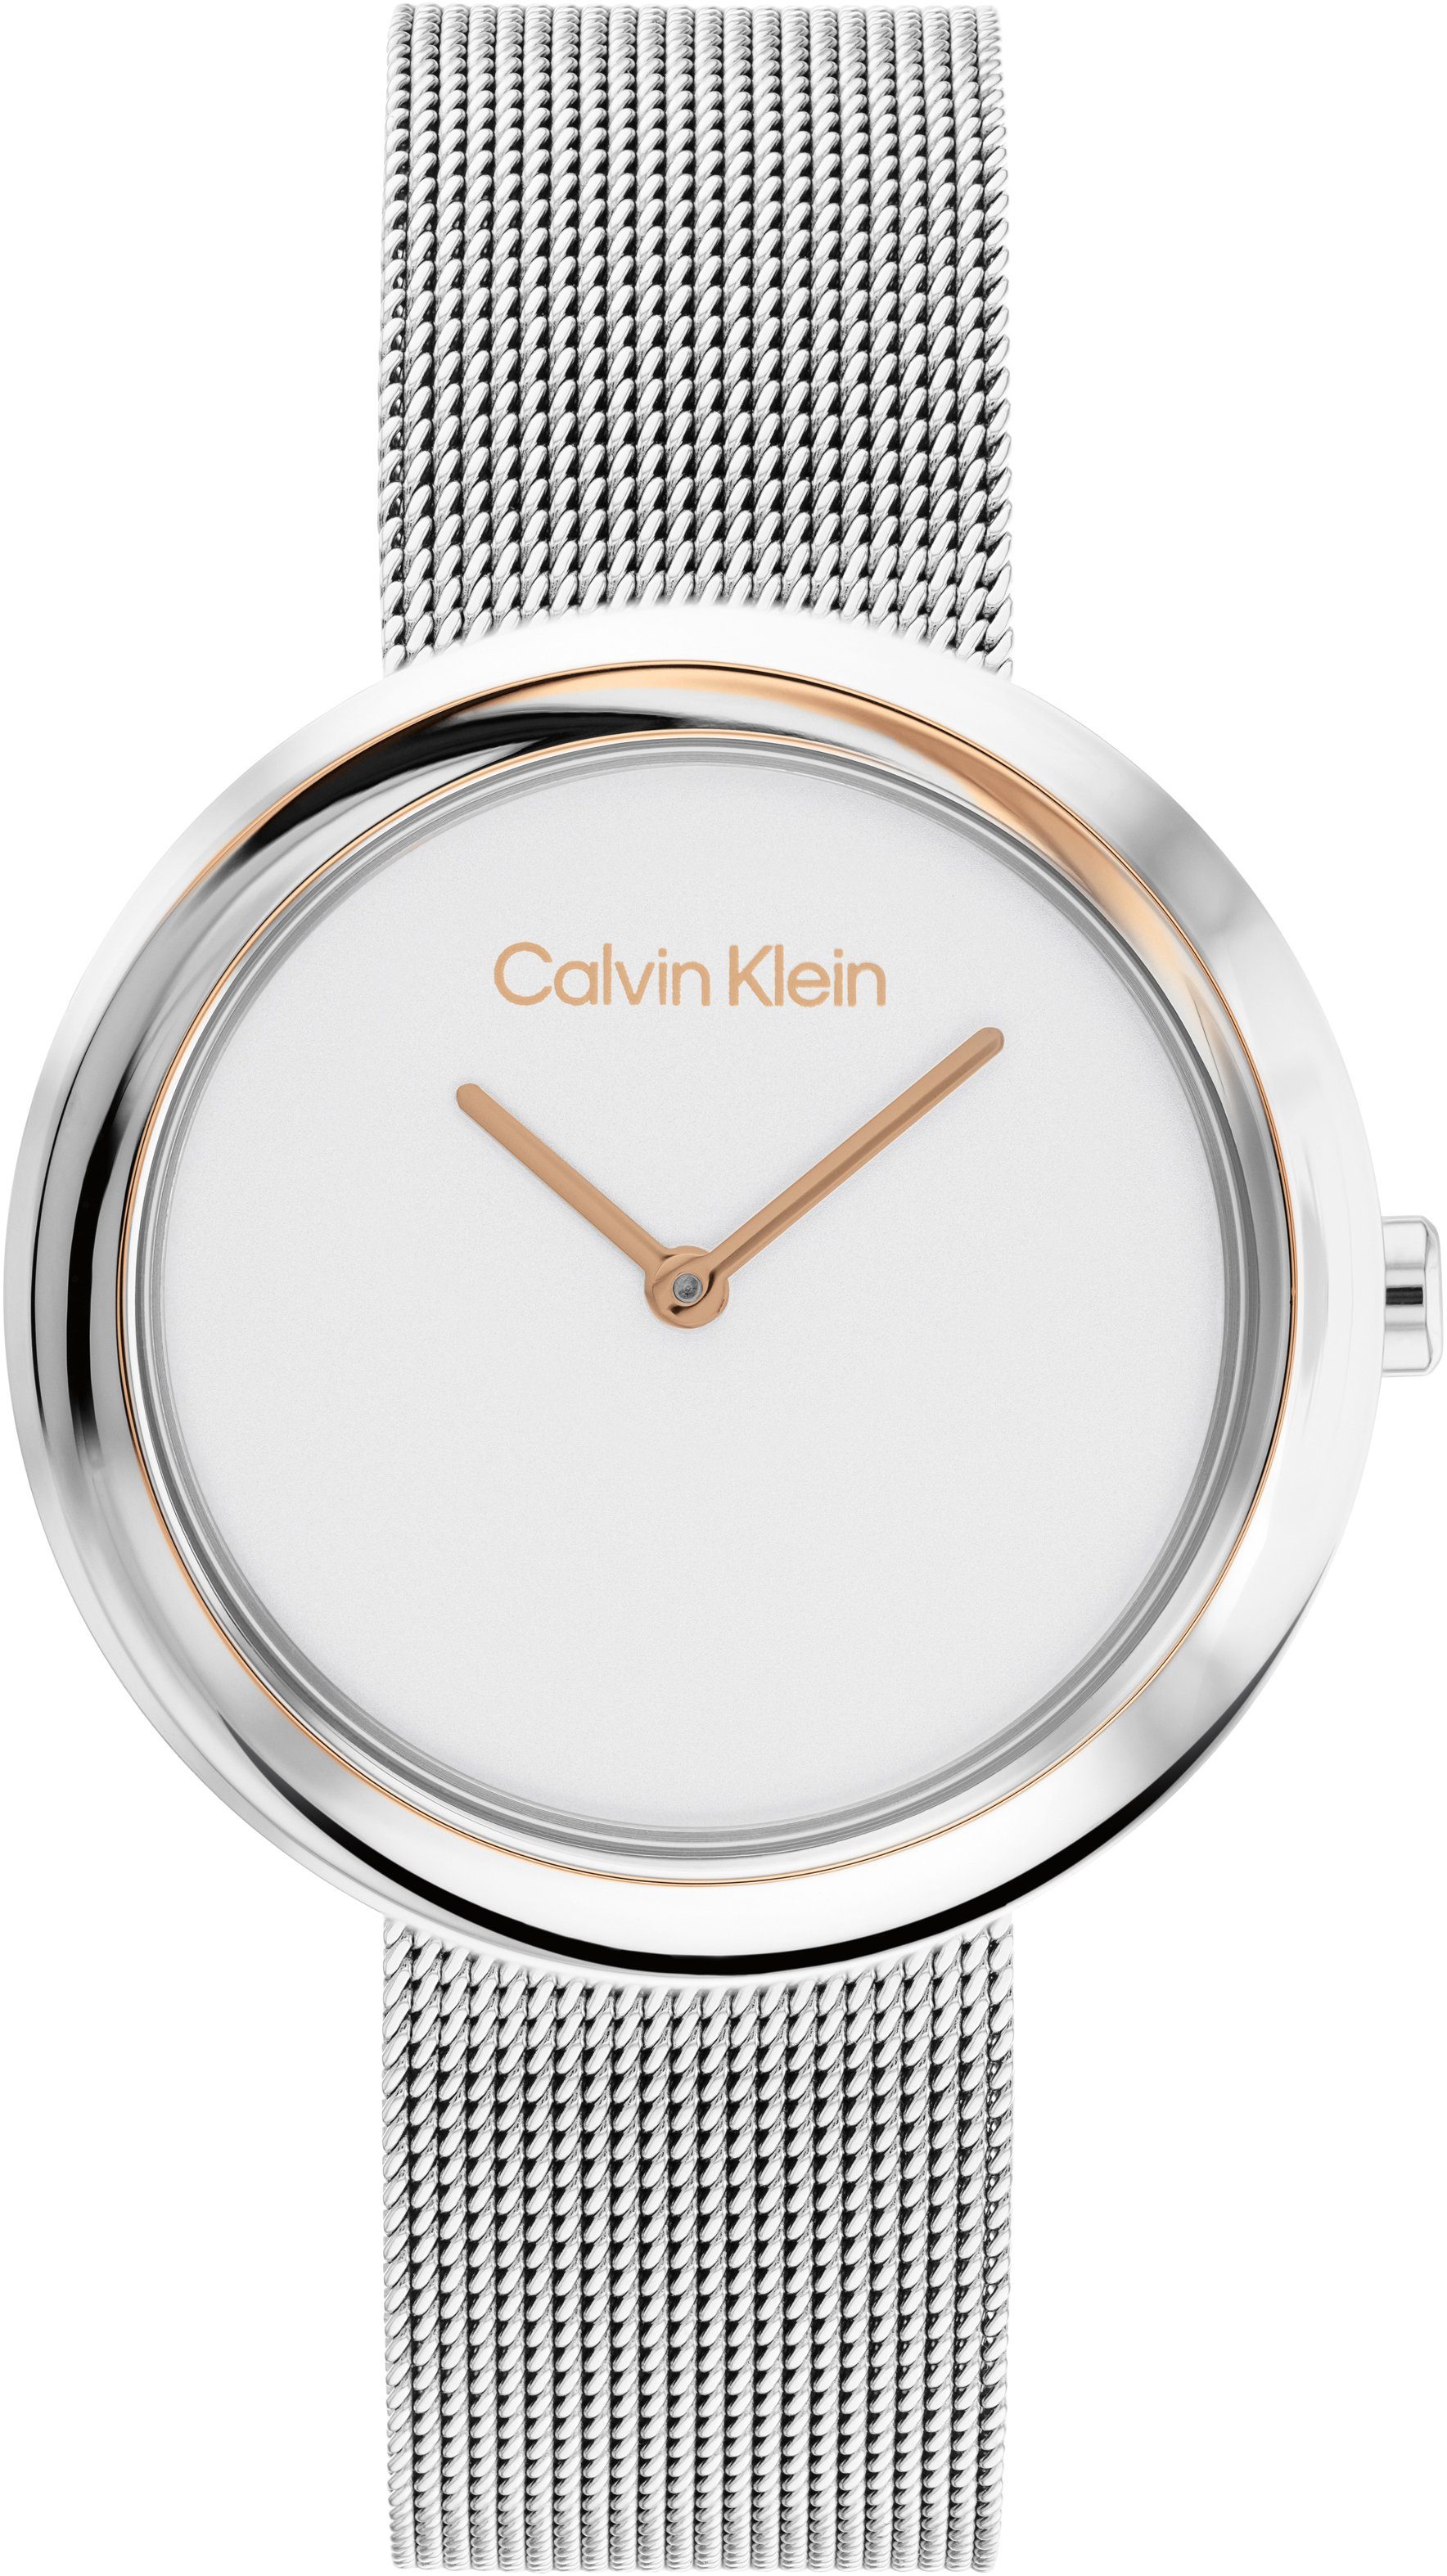 Calvin Klein Quarzuhr Twisted Bezel, 25200011, Armbanduhr, Damenuhr, Mineralglas, IP-Beschichtung